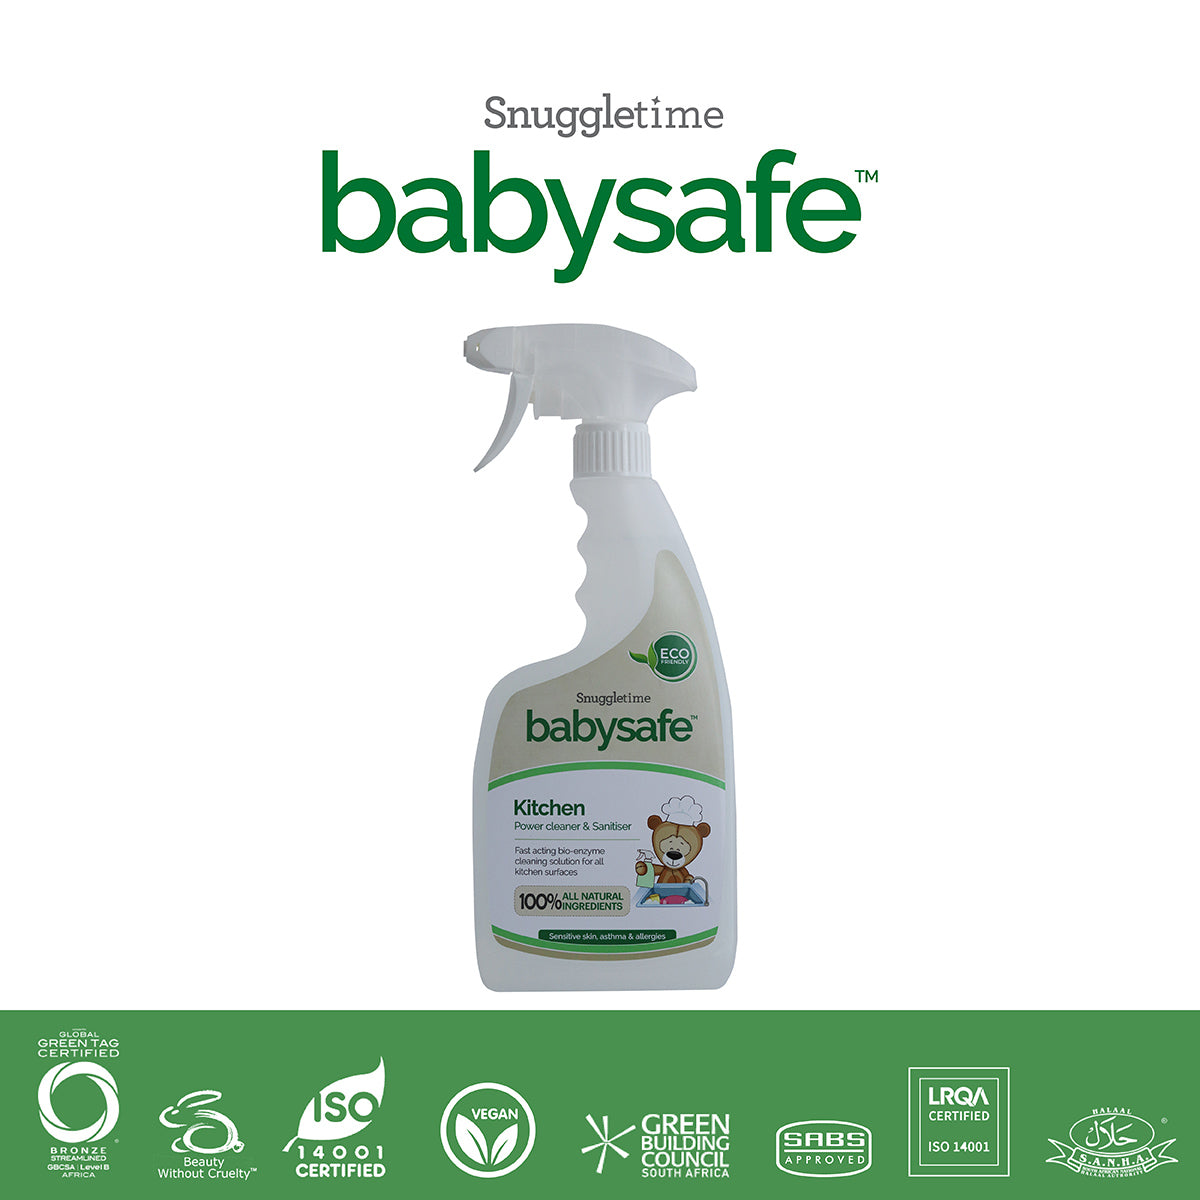 BabySafe Kitchen Power Cleaner & Sanitiser - 500ml